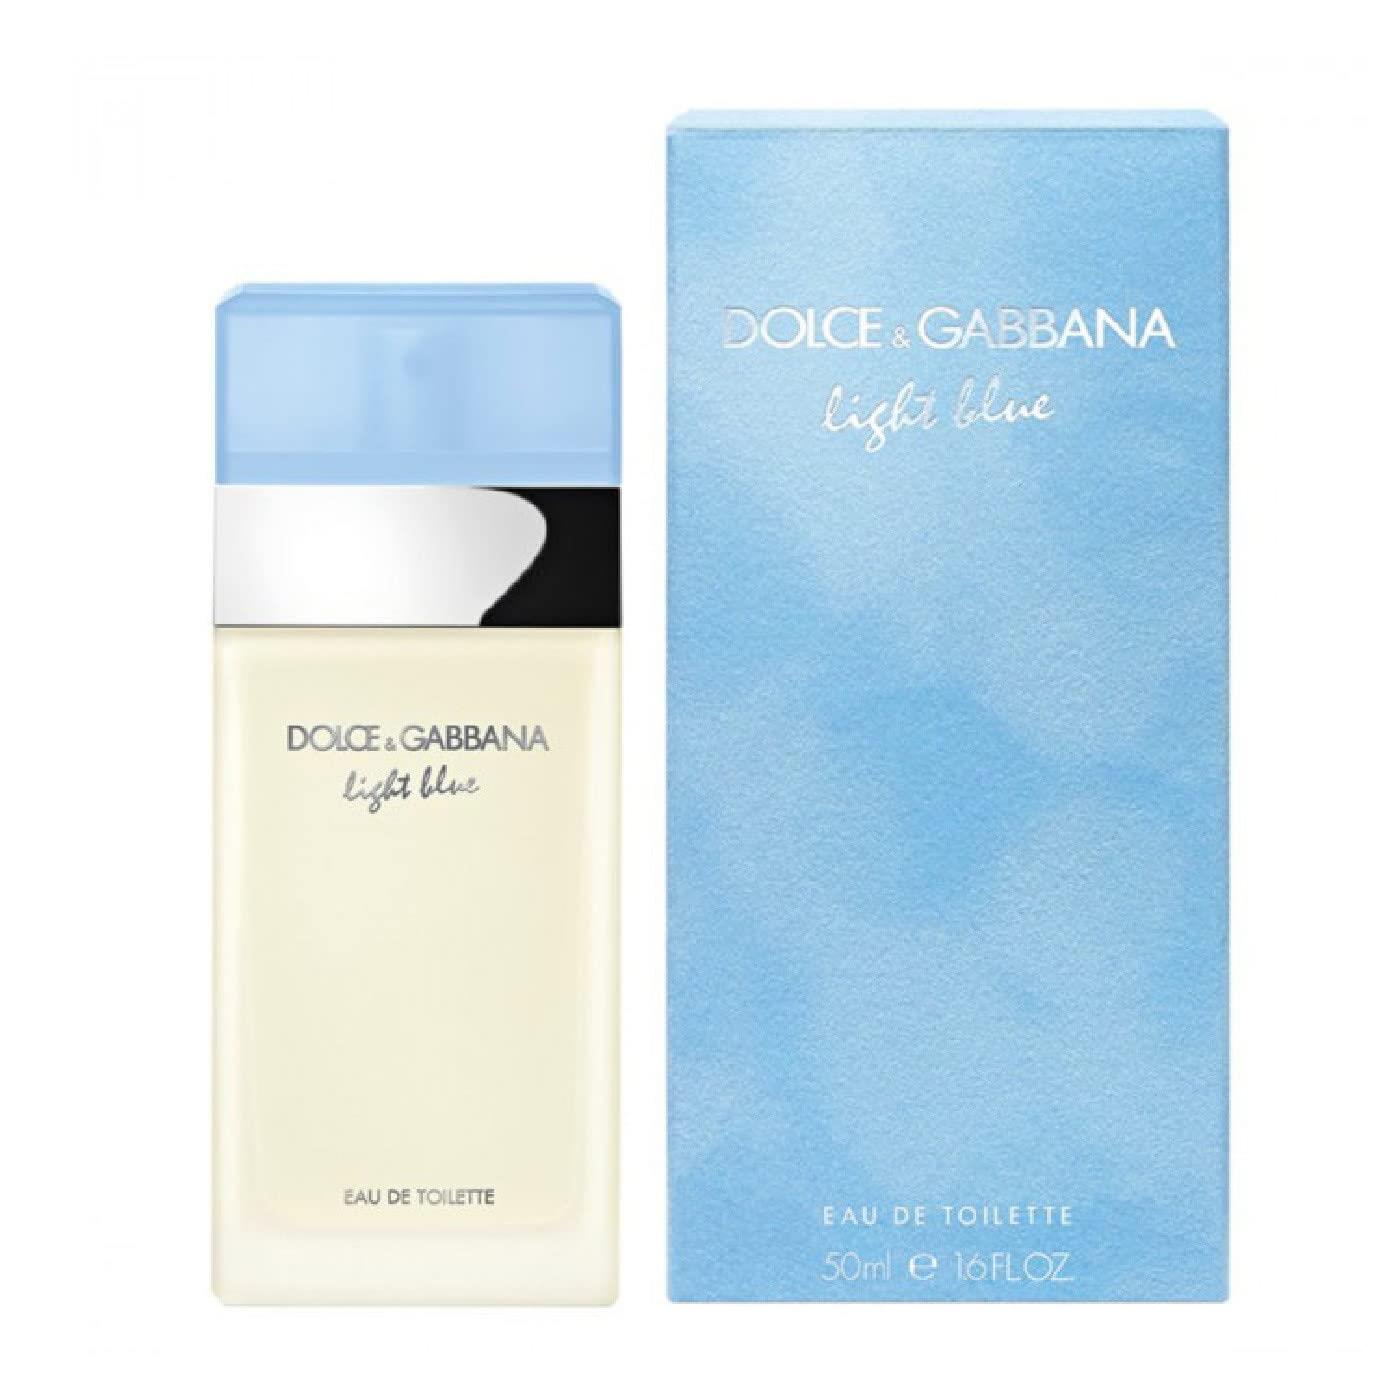 Light Blue de Dolce & Gabbana